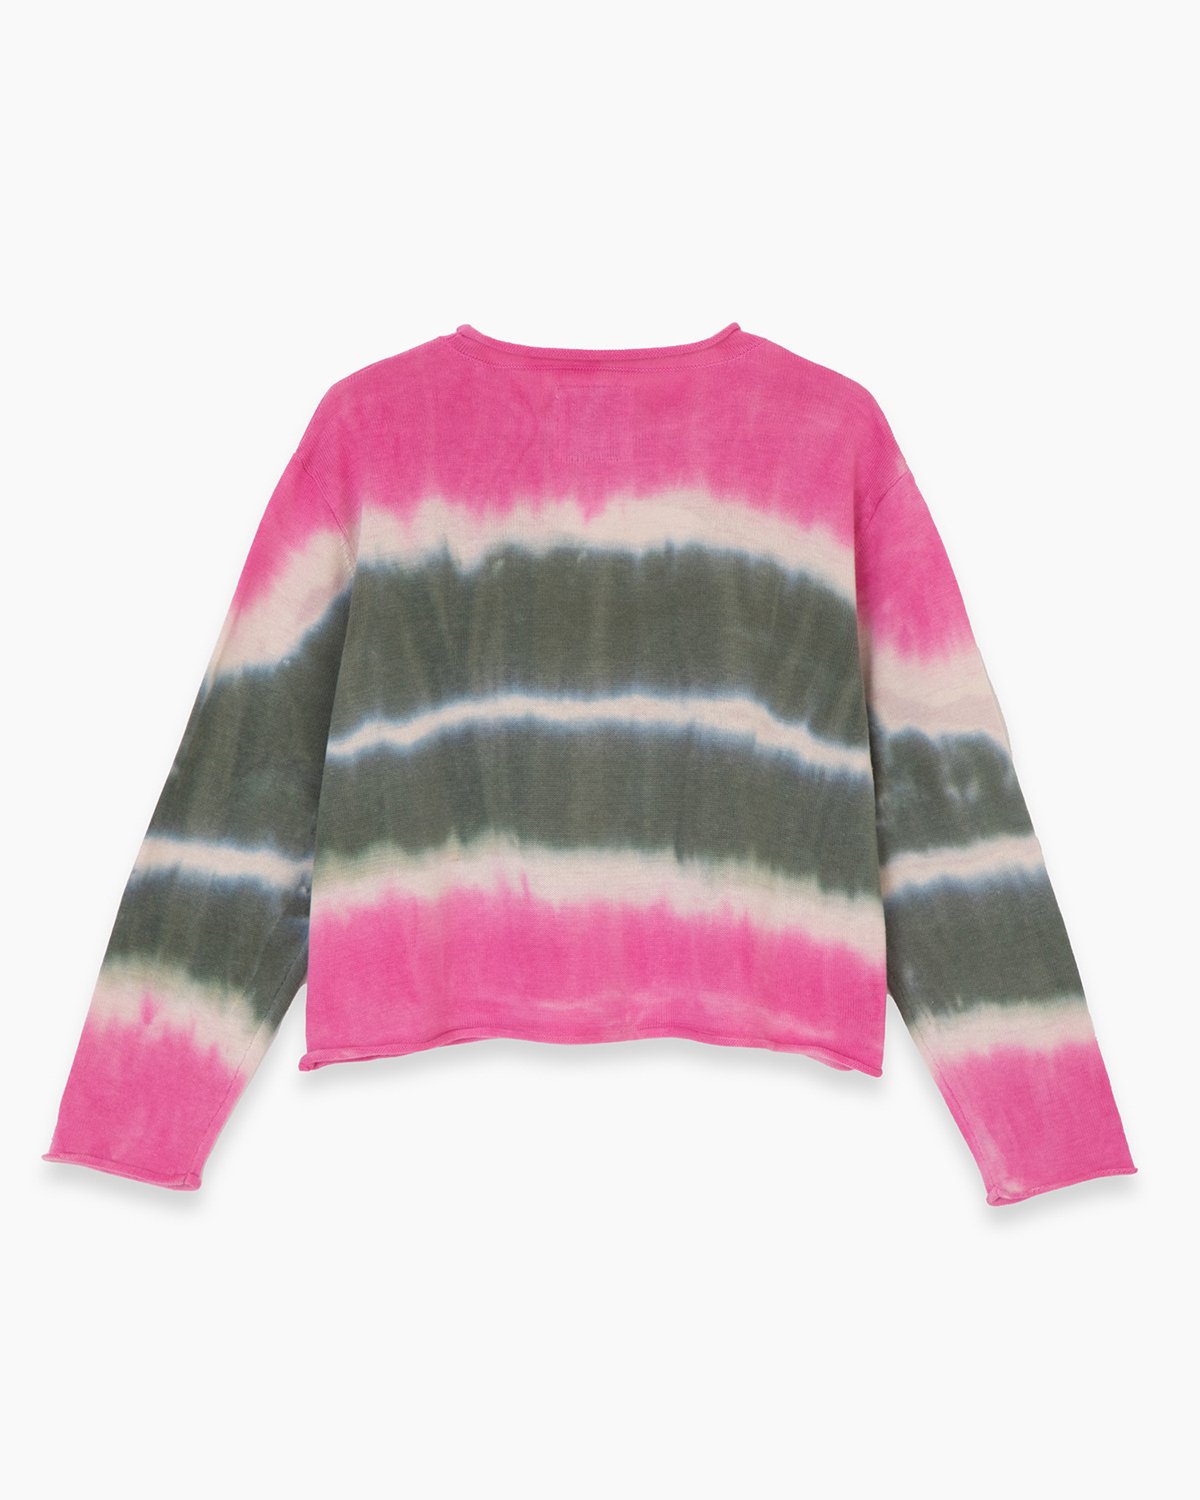 Sweater Dye Tee Girls